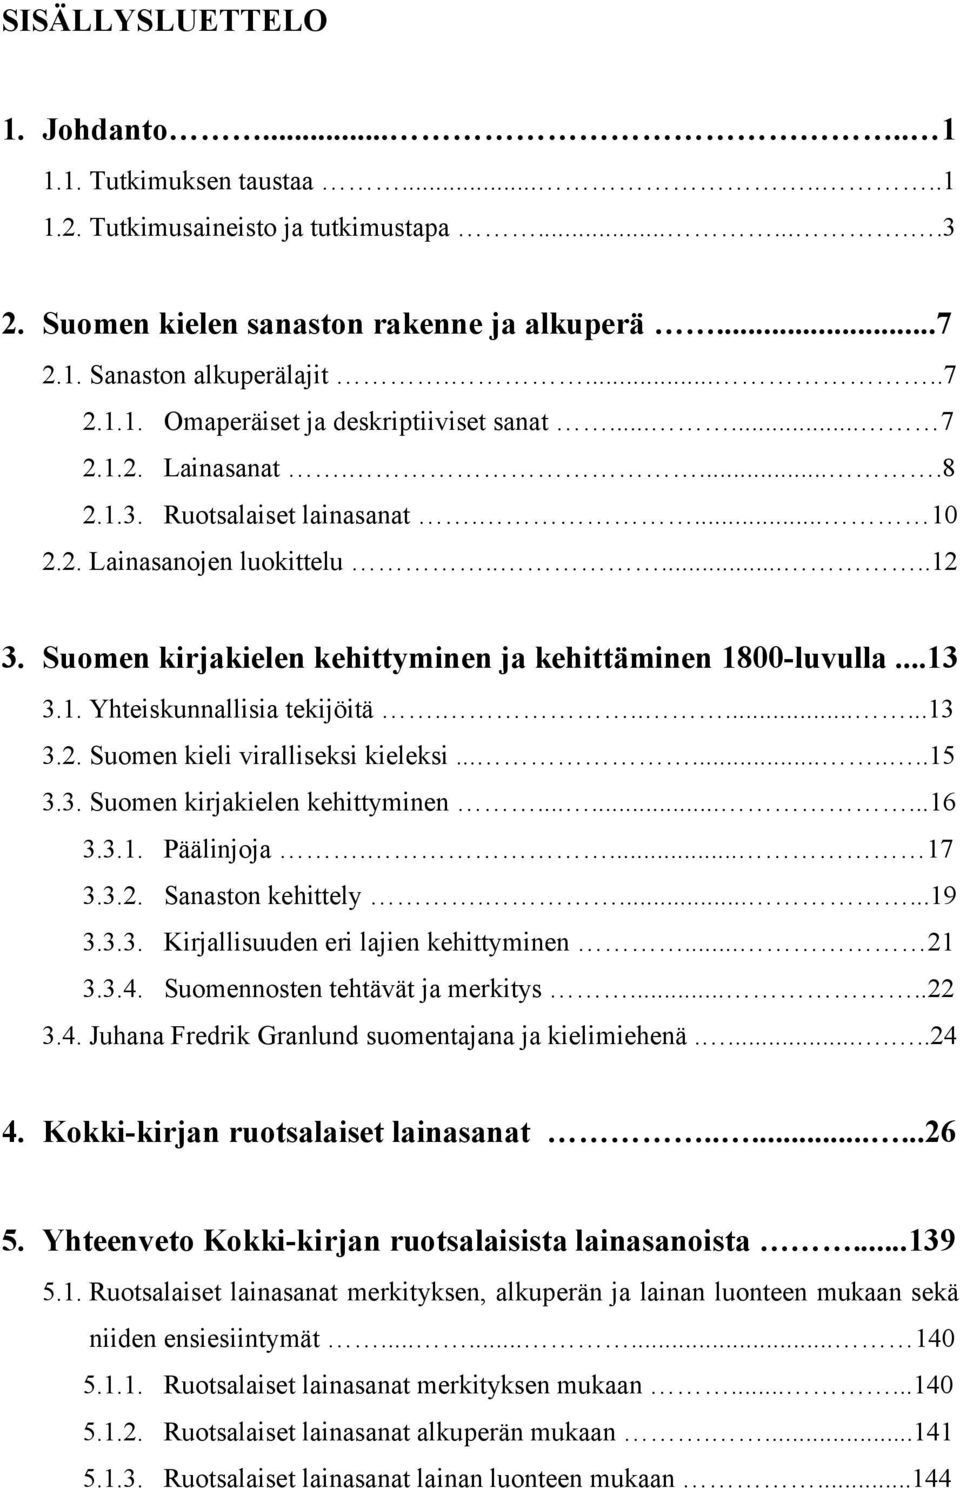 ........13 3.2. Suomen kieli viralliseksi kieleksi..........15 3.3. Suomen kirjakielen kehittyminen.........16 3.3.1. Päälinjoja.... 17 3.3.2. Sanaston kehittely.......19 3.3.3. Kirjallisuuden eri lajien kehittyminen.